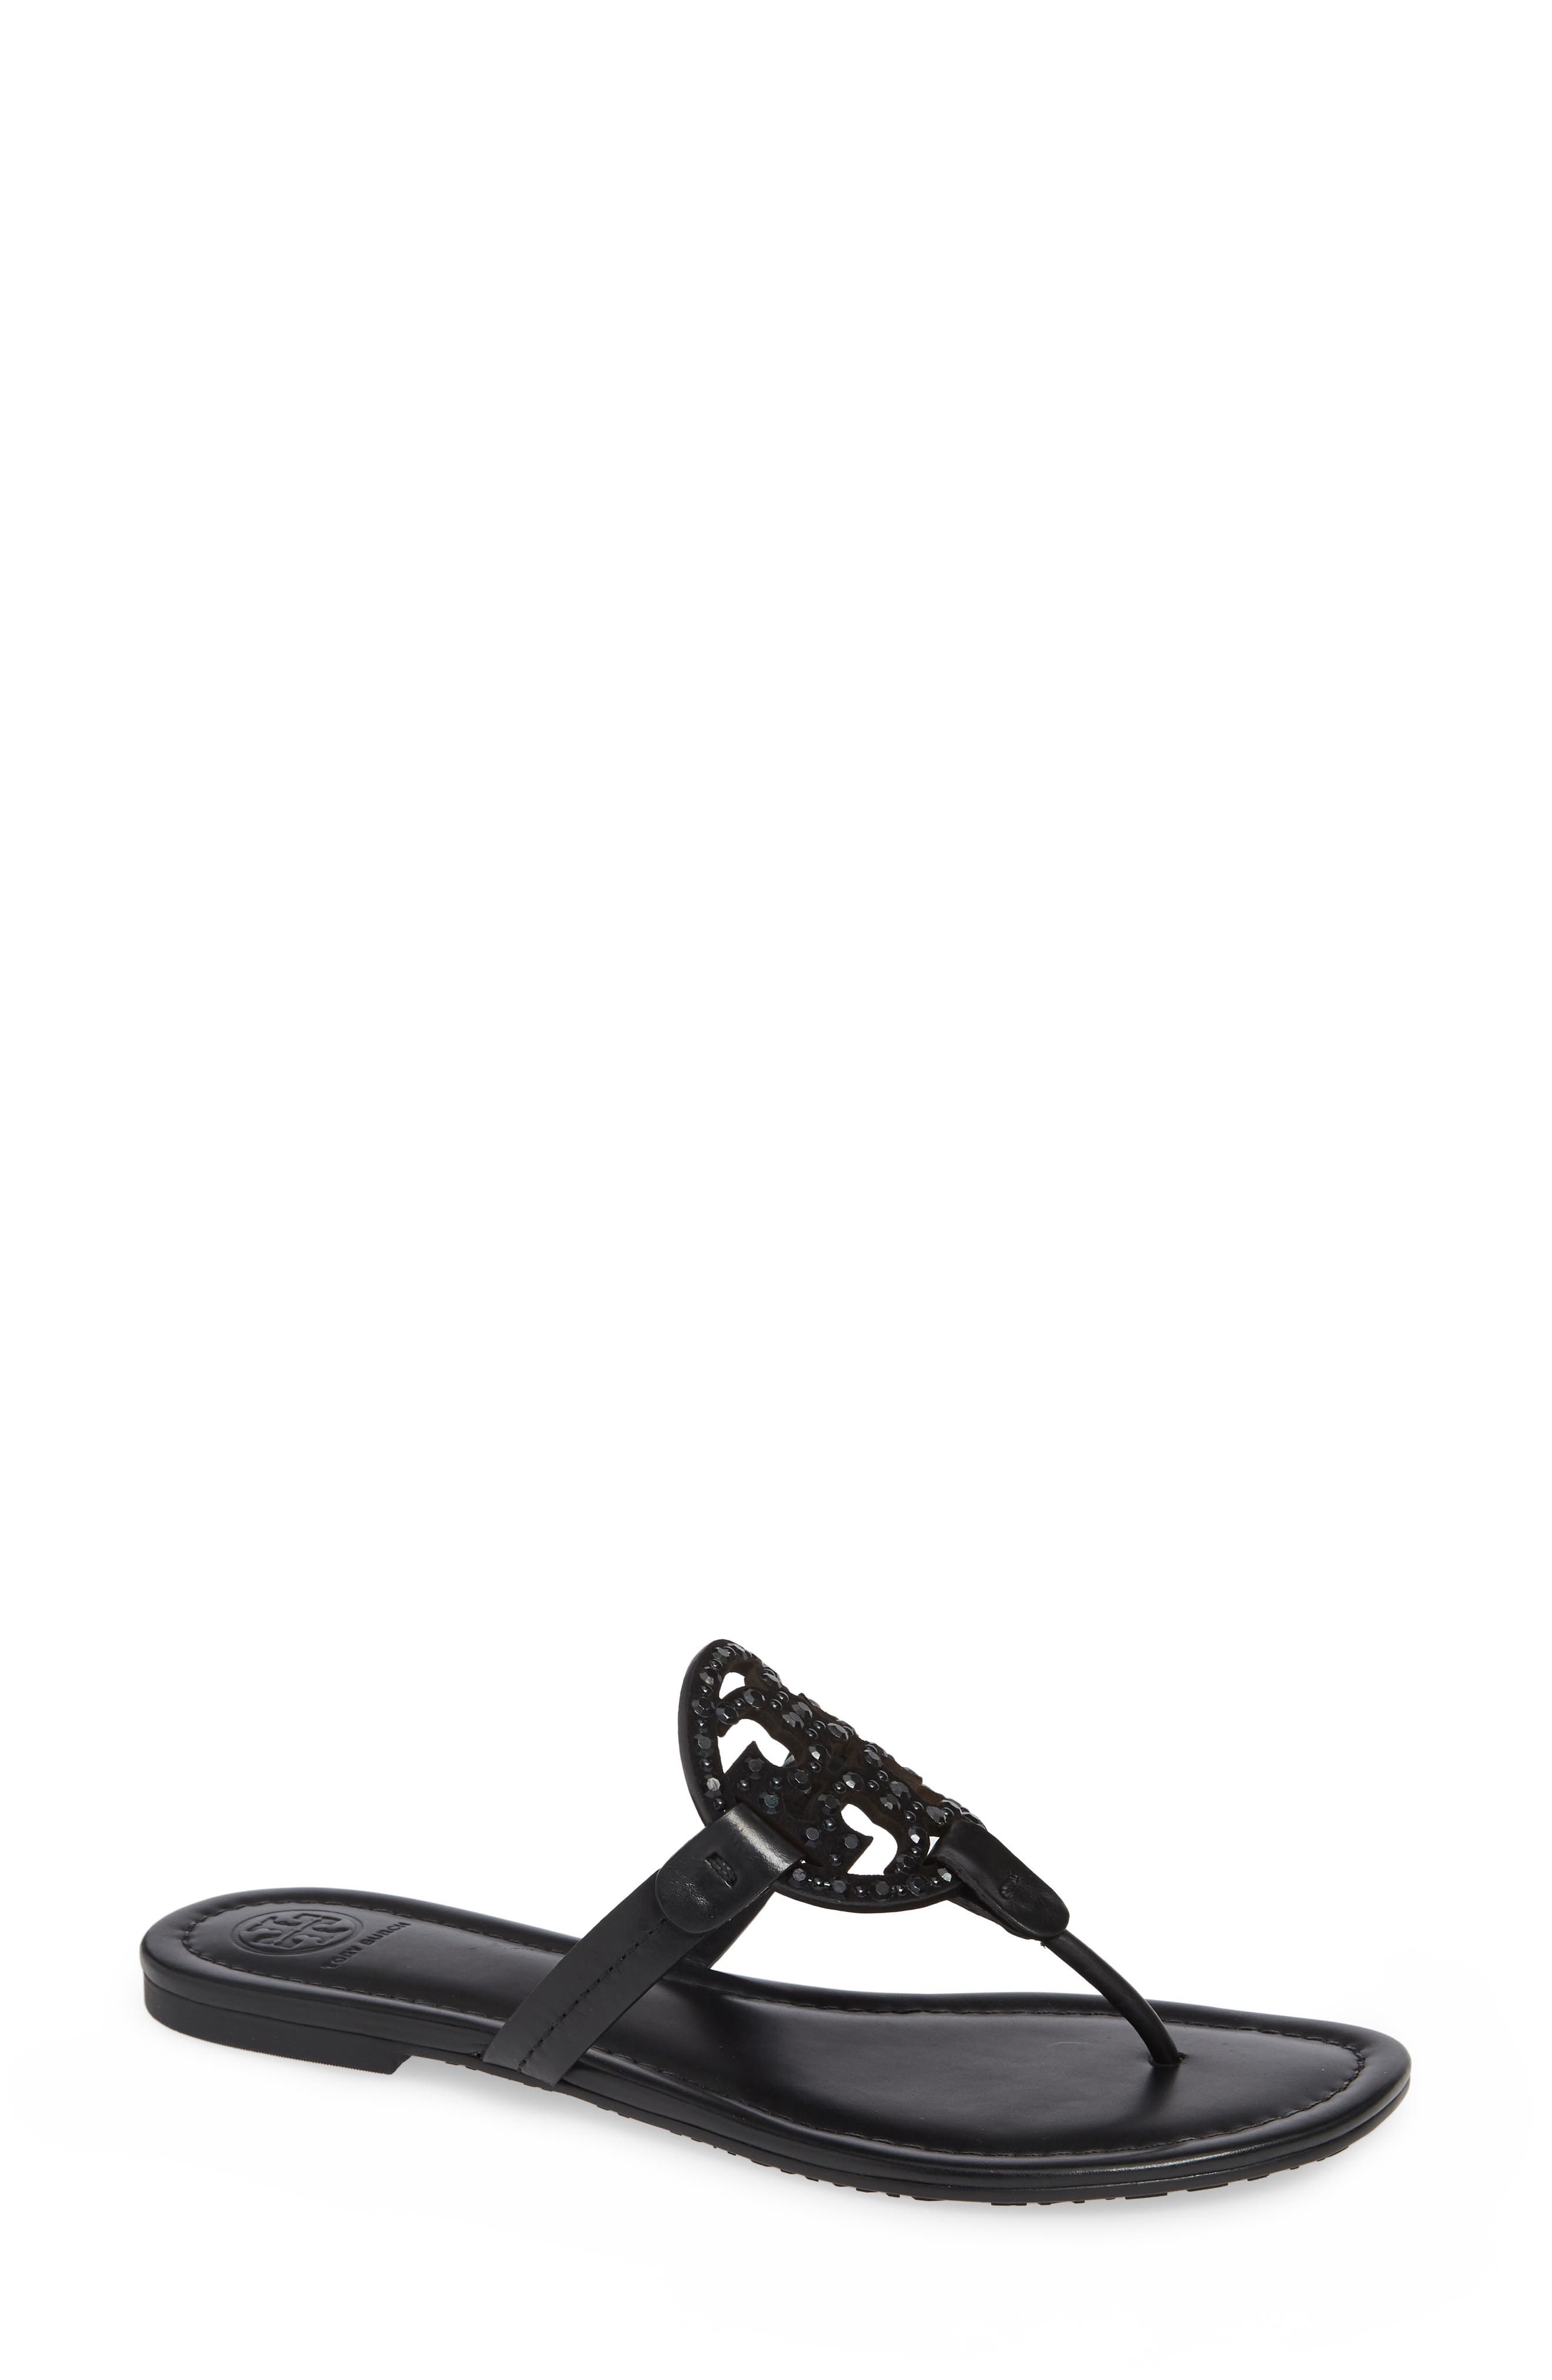 UPC 192485001662 product image for Women's Tory Burch Miller Embellished Sandal, Size 4 M - Black | upcitemdb.com